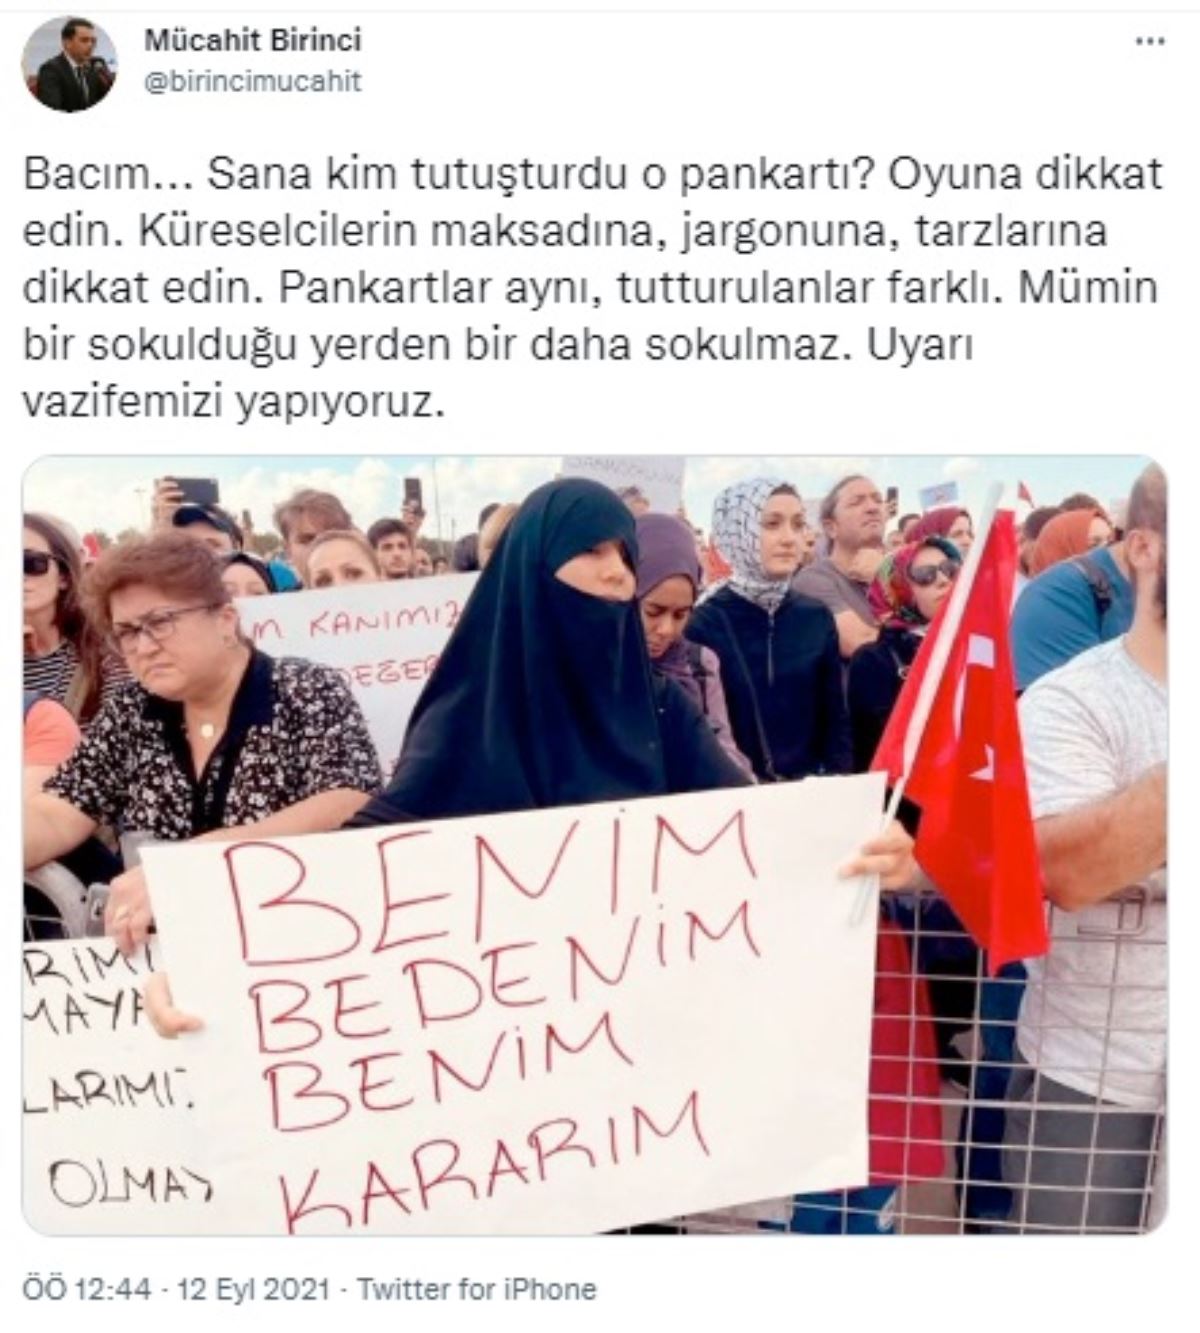 AKP mitingi Gezi'ye bağladı: "Bacım... Sana kim tutuşturdu o pankartı?"